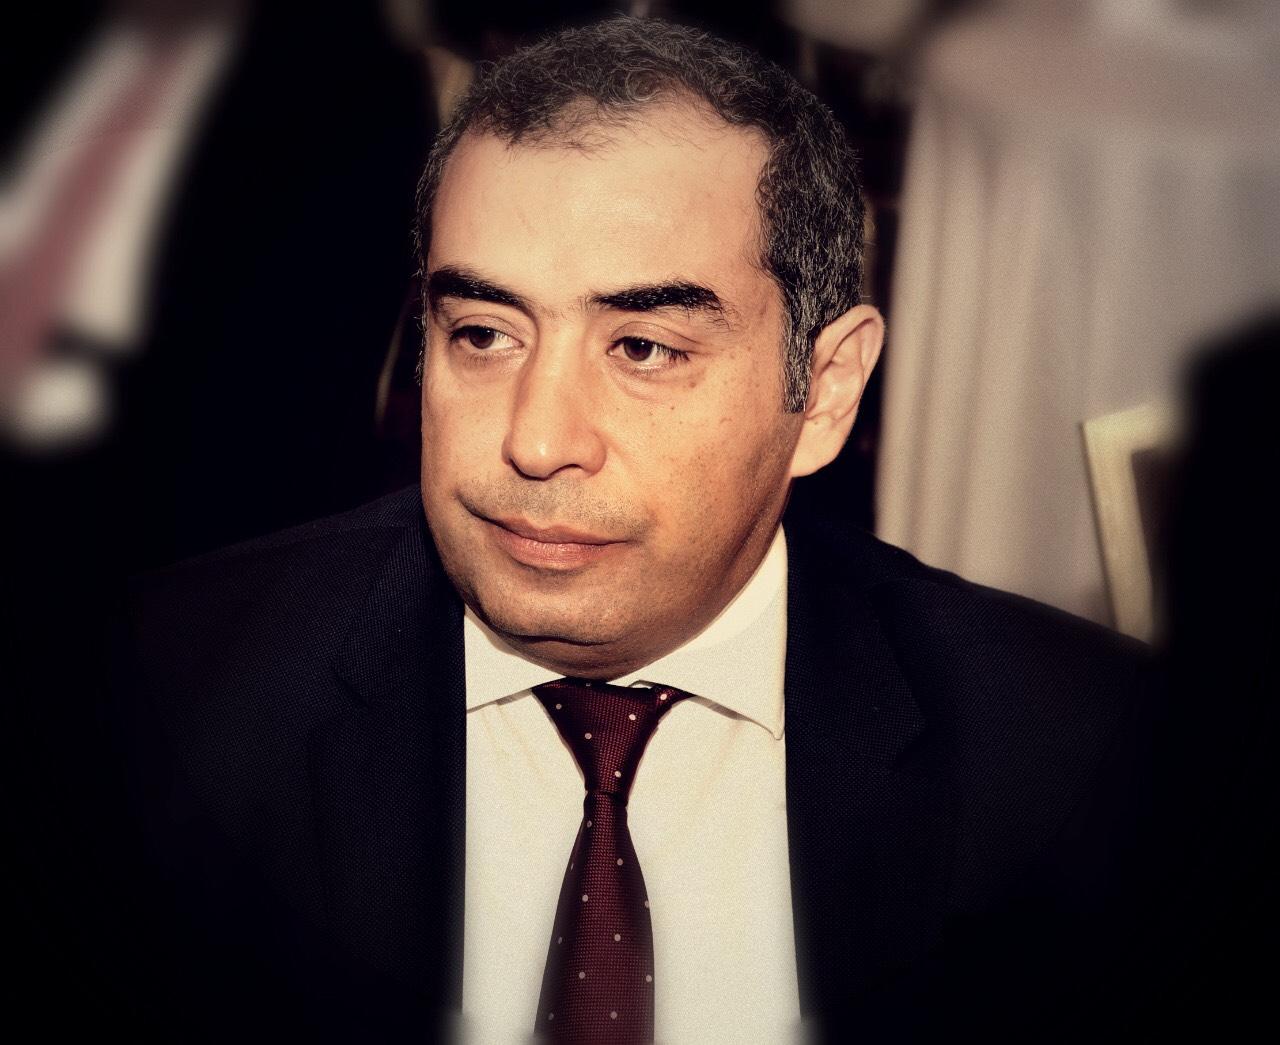   المهندس أحمد سرحان رئيسا للجنة الاتصالات وتكنولوجيا المعلومات بالجمعية المصرية اللبنانية